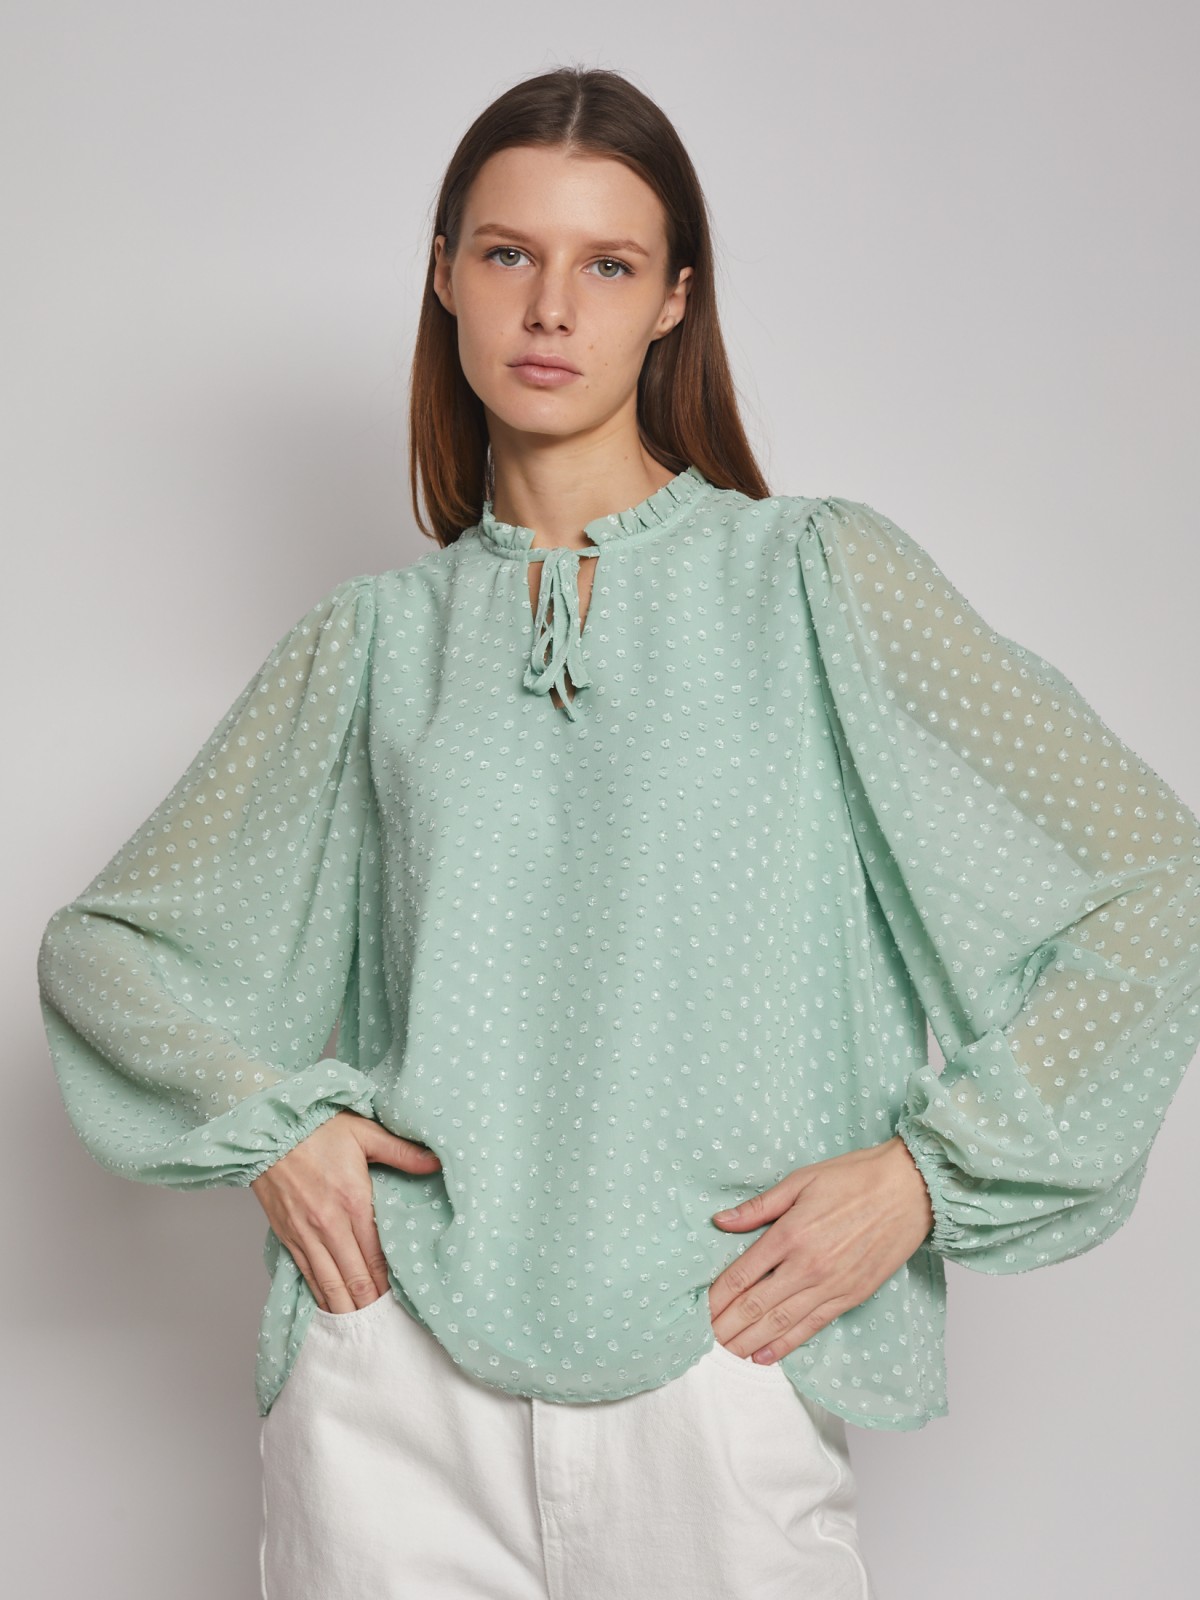 Блузка с  длинными рукавами zolla 023131162113, цвет мятный, размер XS - фото 1